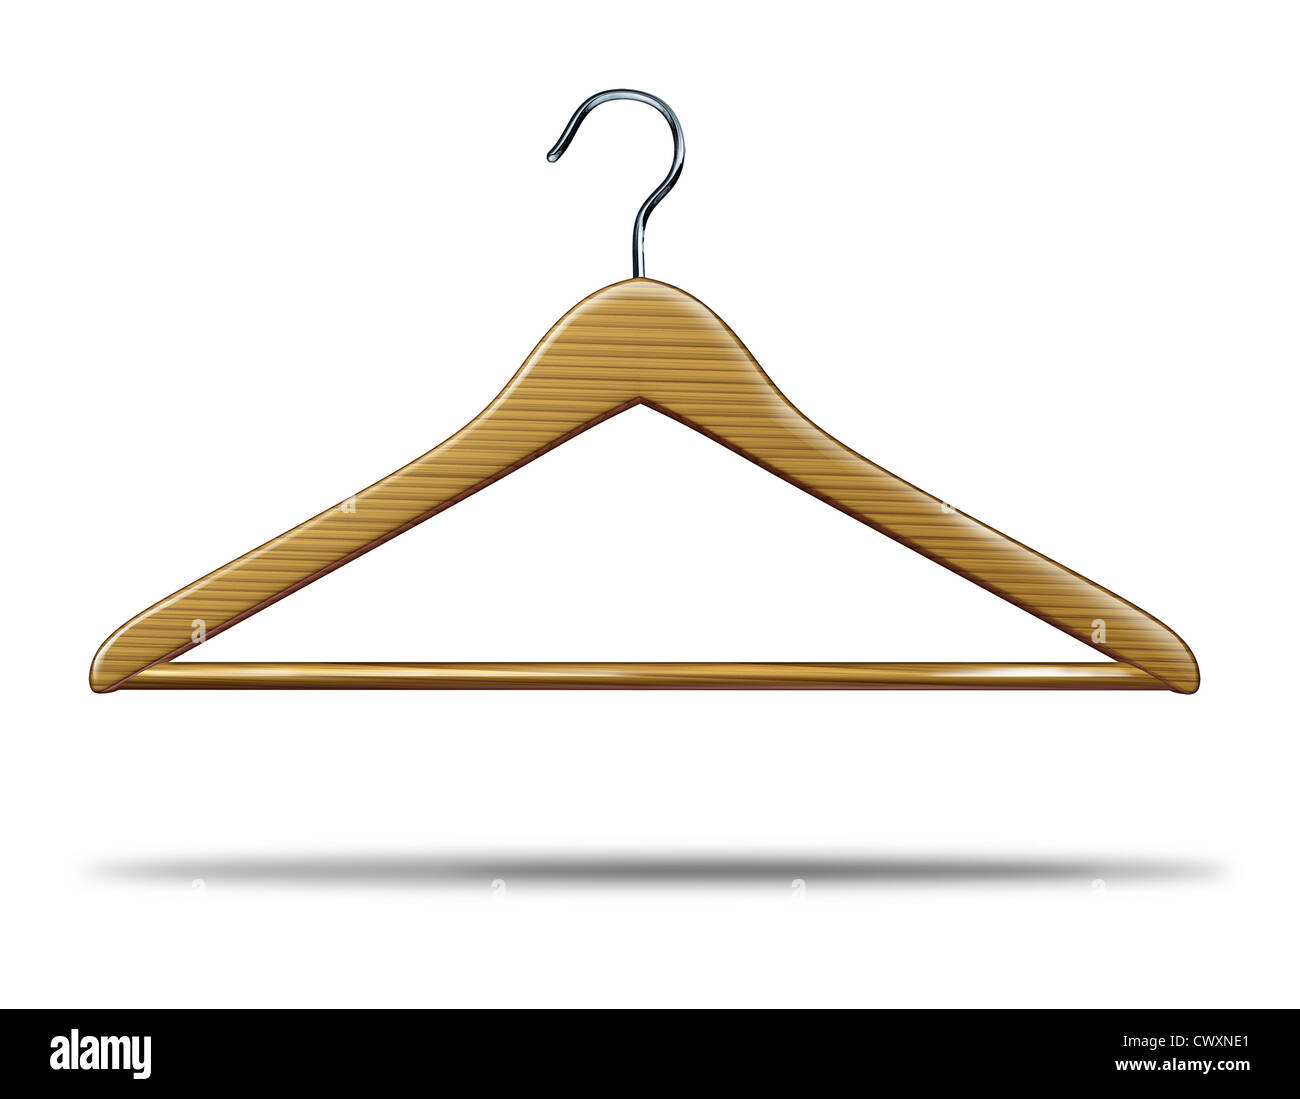 Magasin de vêtements hanger comme symbole de placard et de stockage magasin de marchandises et une icône de l'industrie textile commercial business sur un fond blanc. Banque D'Images